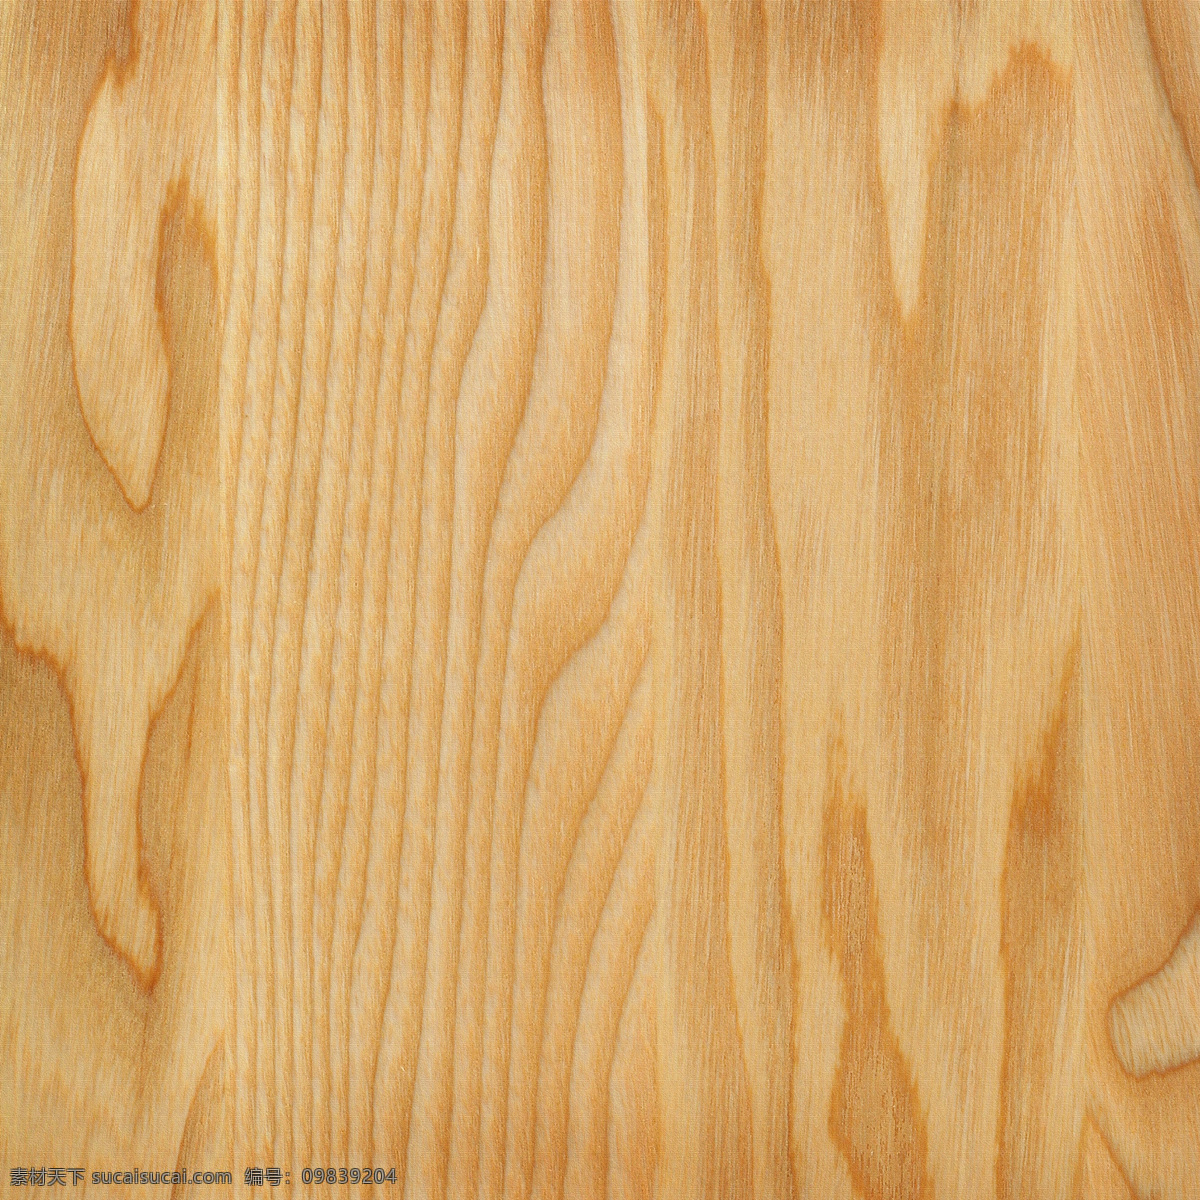 木地板 纹理 材质 背景 高清 大图 木纹 木板 木质 贴图 橙色 底纹边框 背景底纹